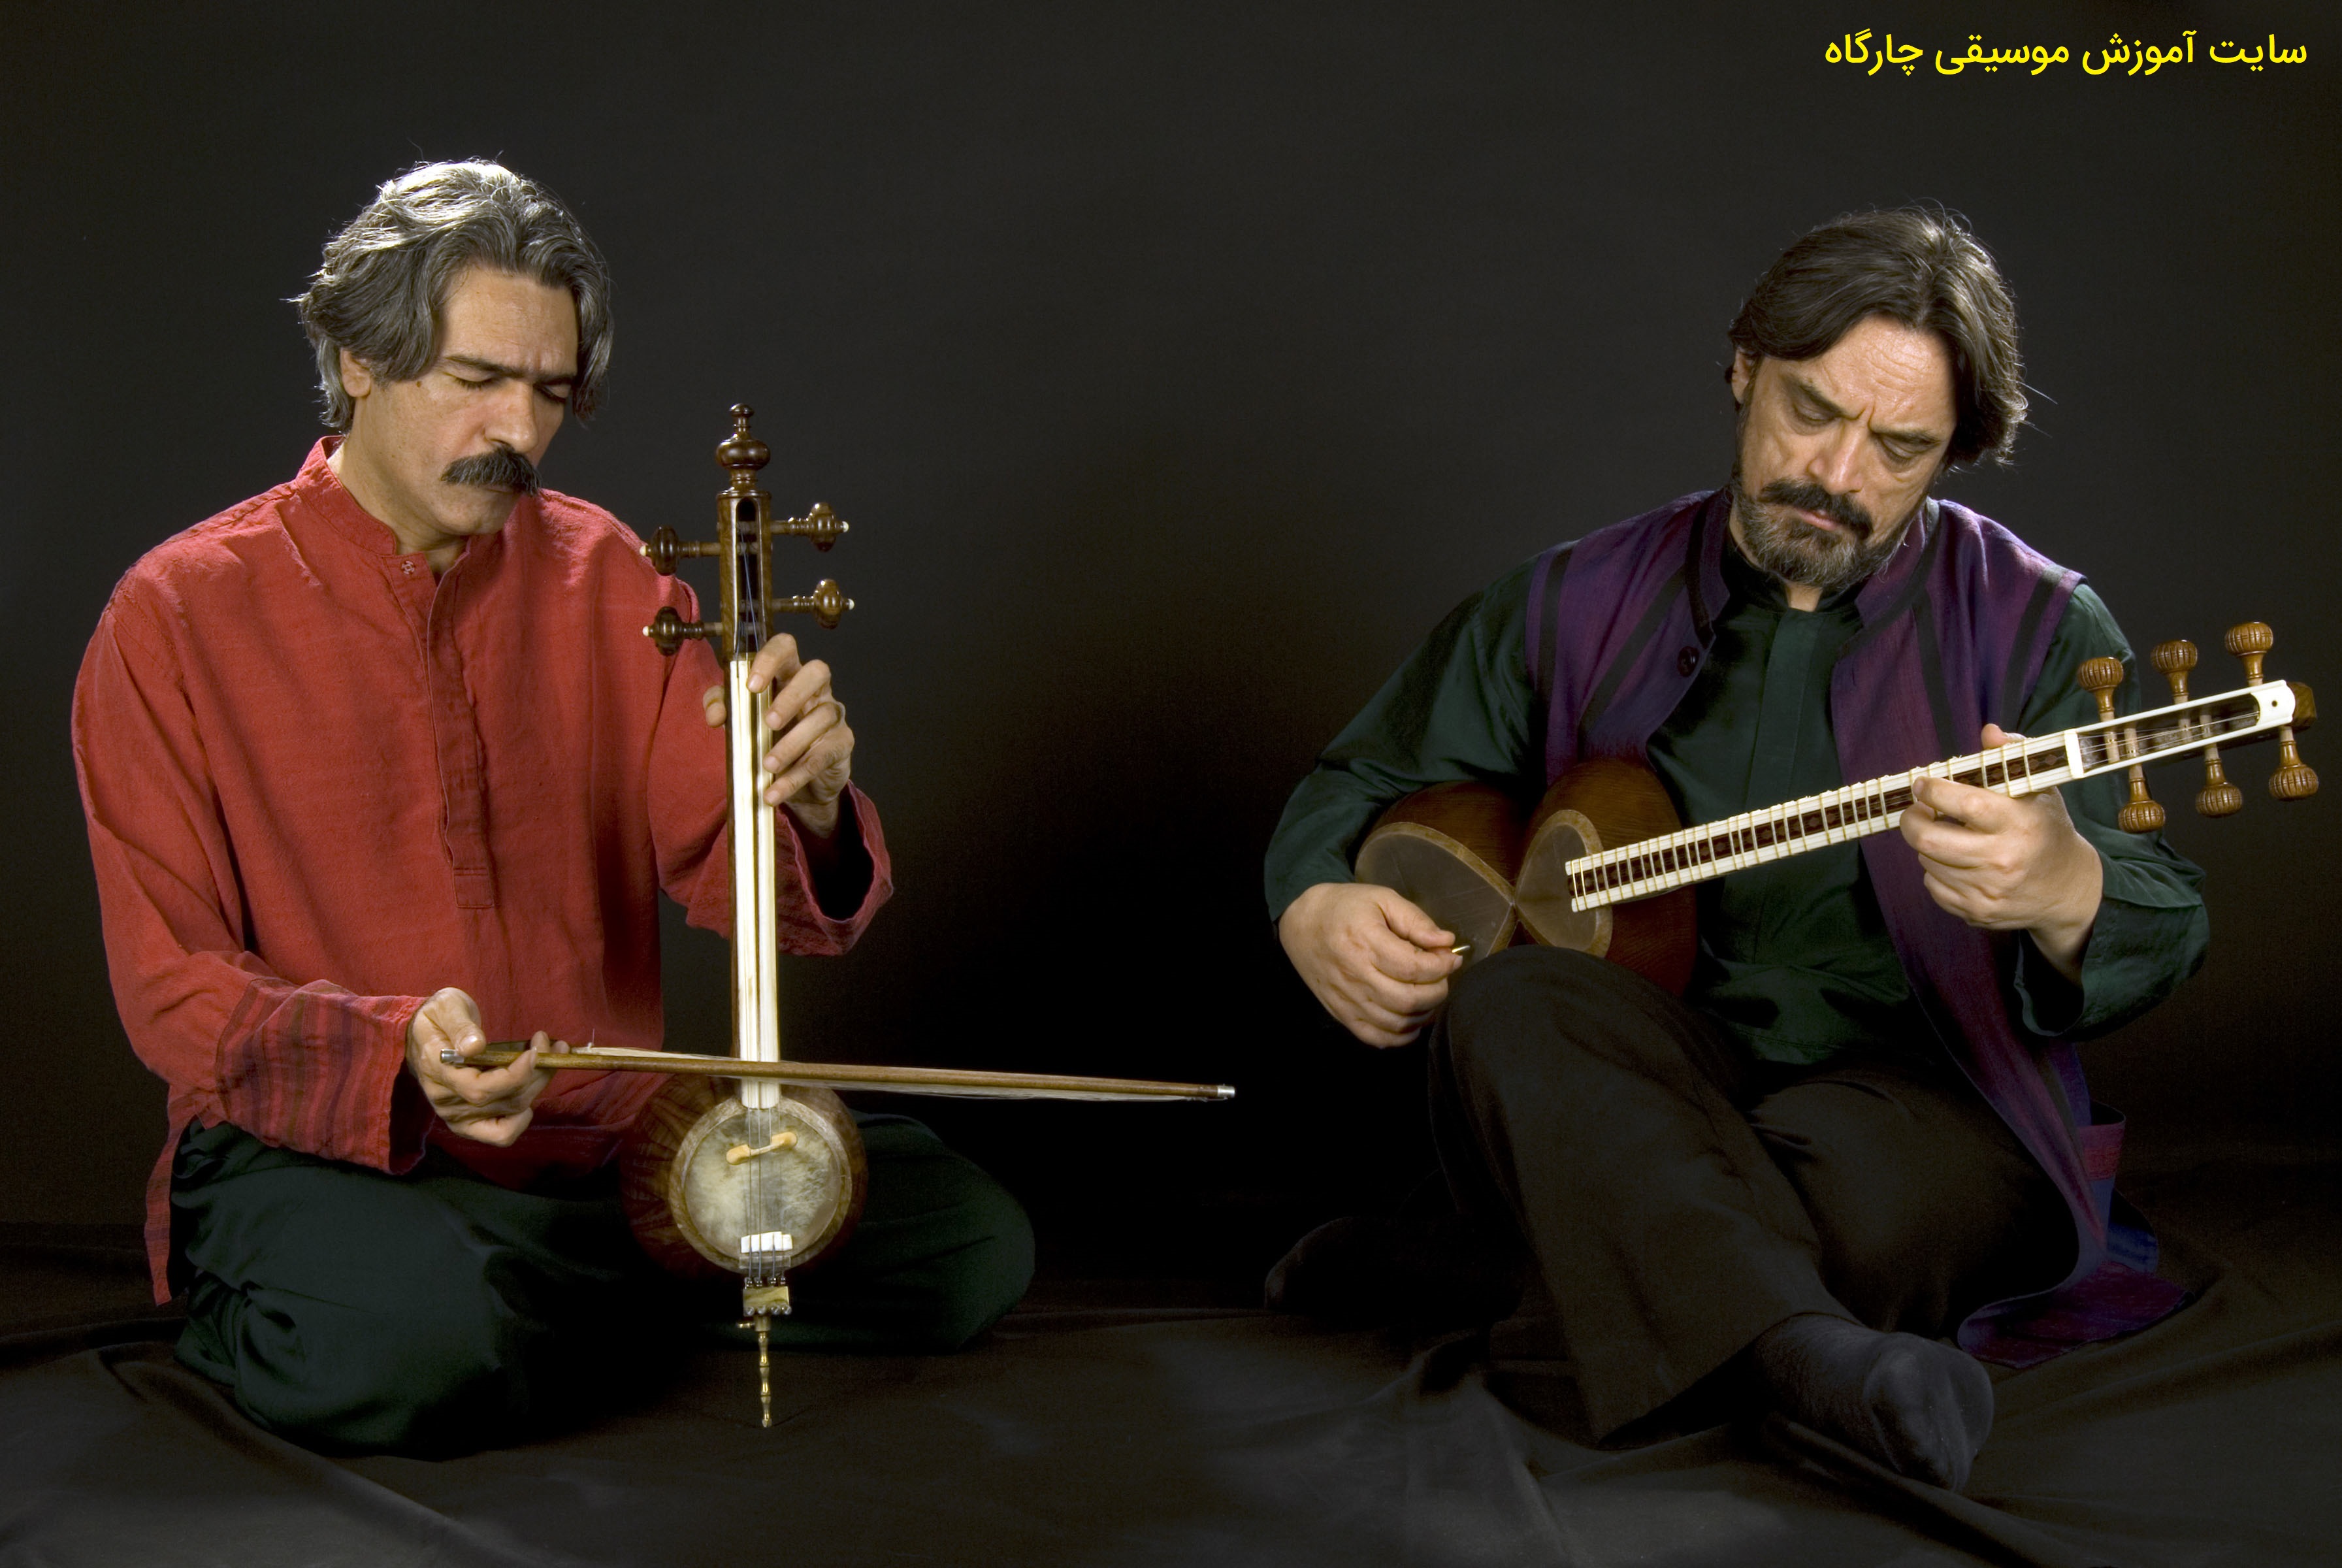 حسین علیزاده و کیهان کلهر - موسیقی ایرانی